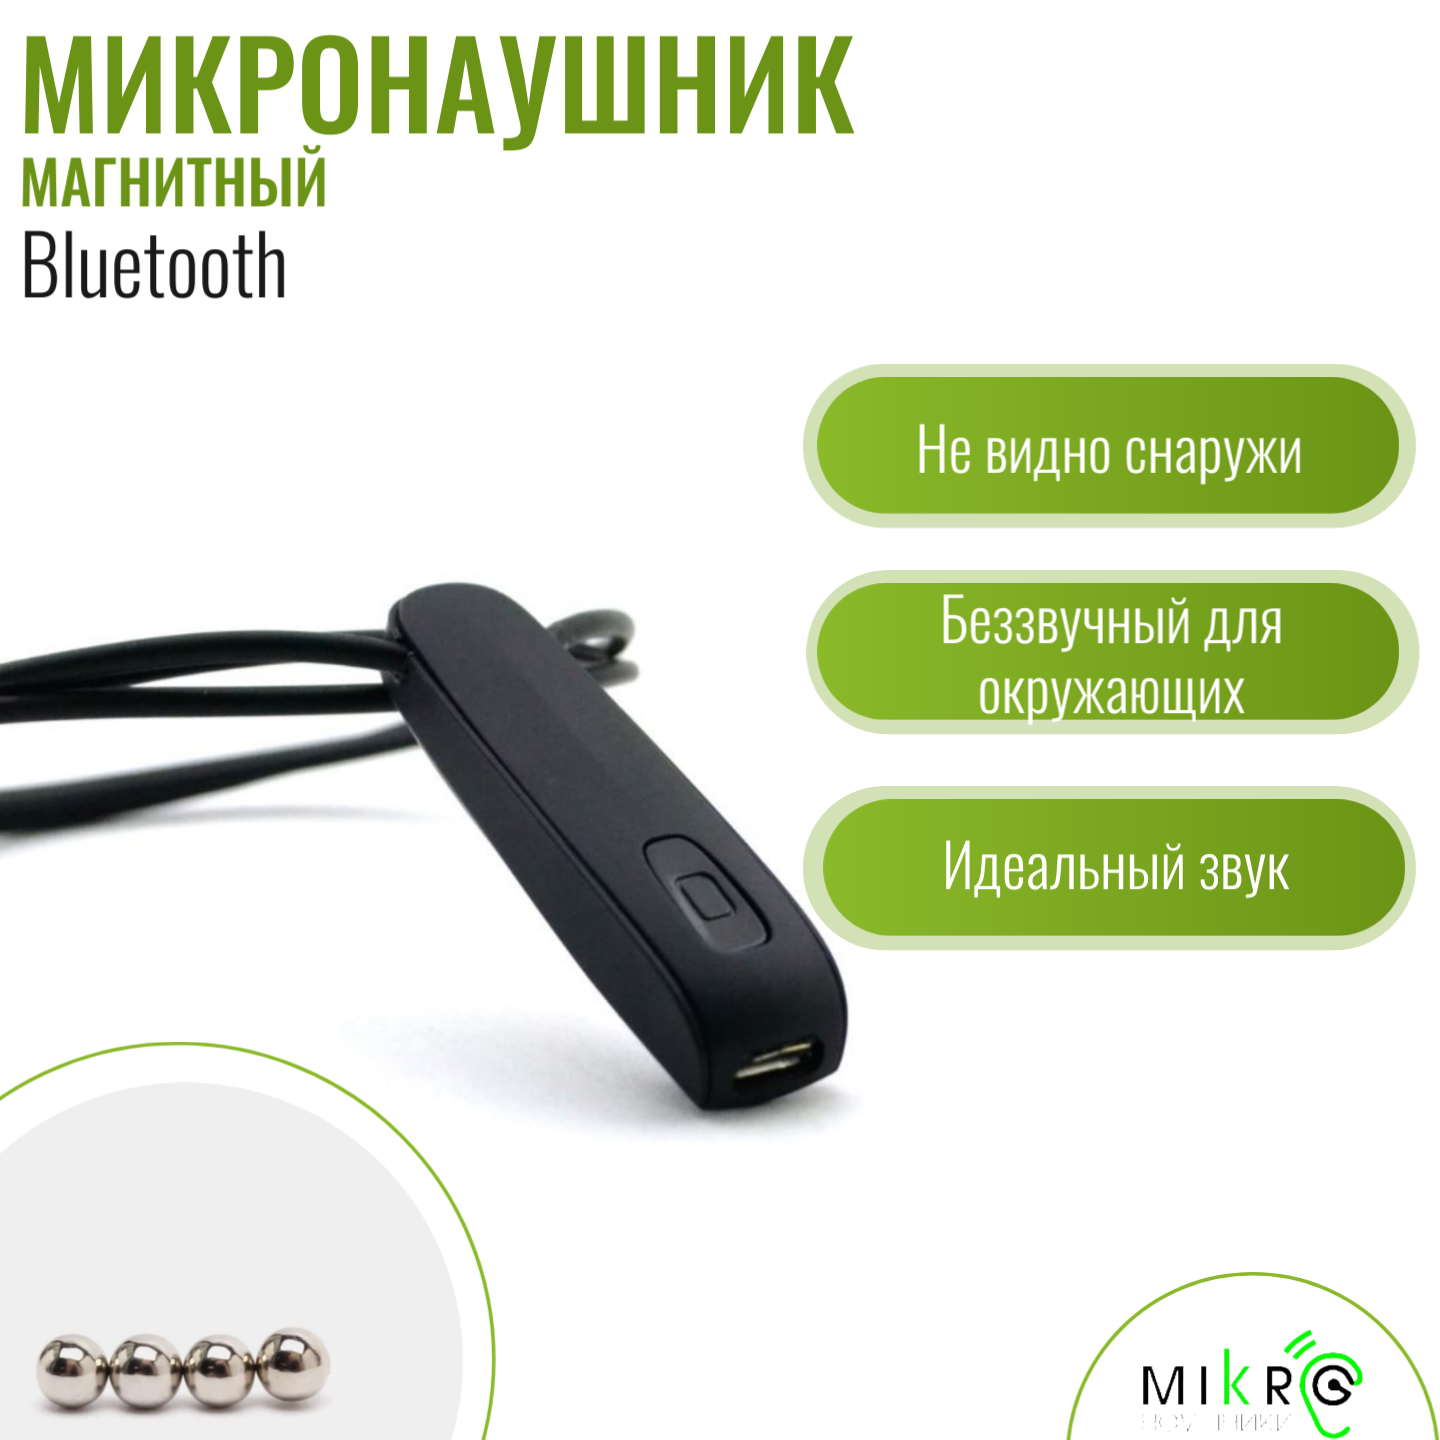 Микронаушник Bluetooth магнитный со встроенным микрофоном 12 микродинамиков